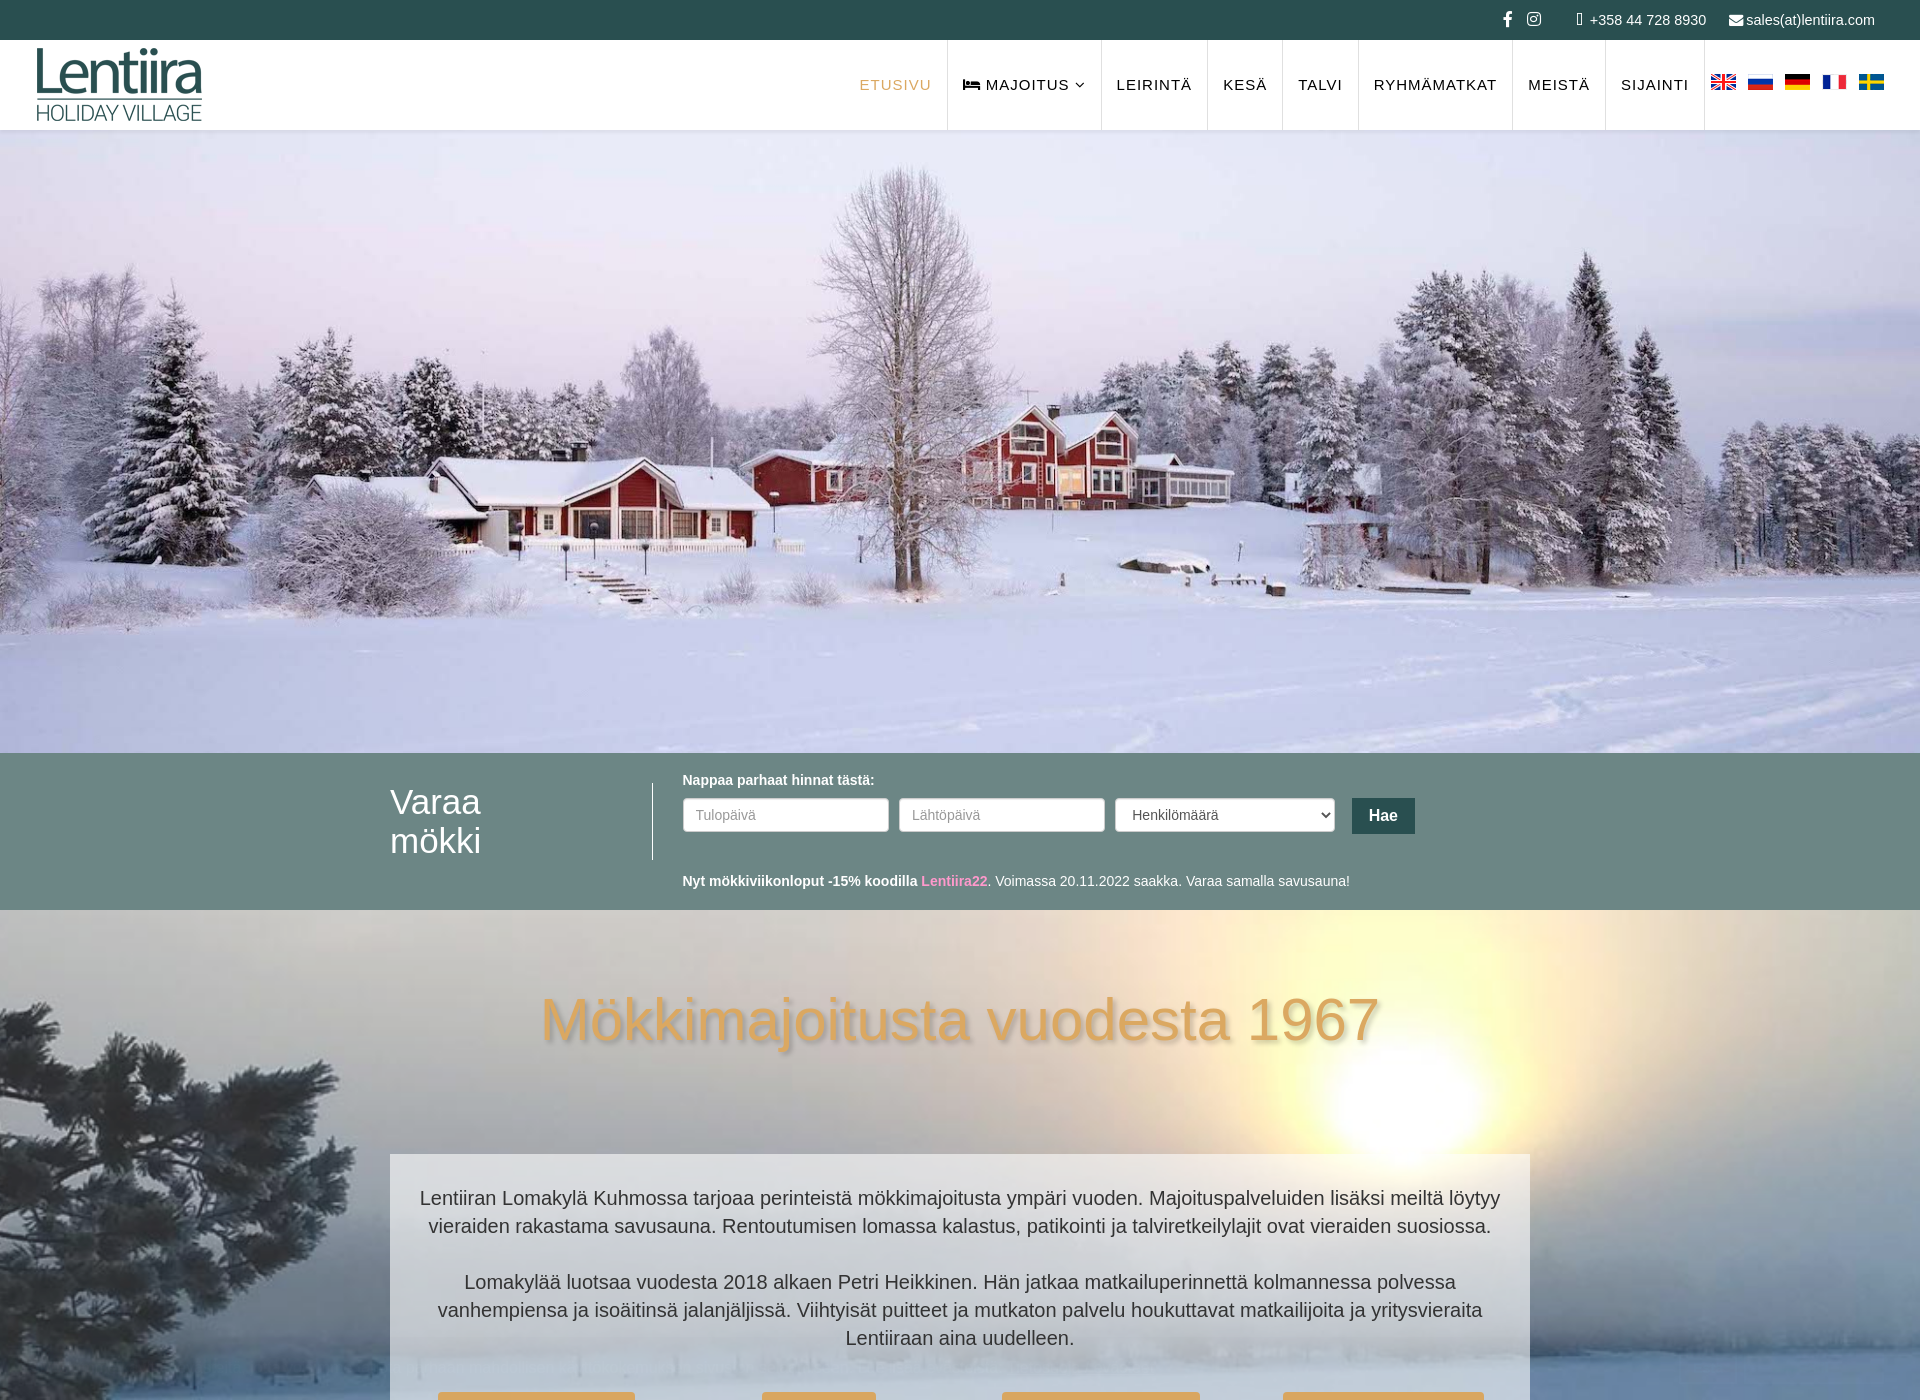 Näyttökuva lentiiraholidayvillage.fi